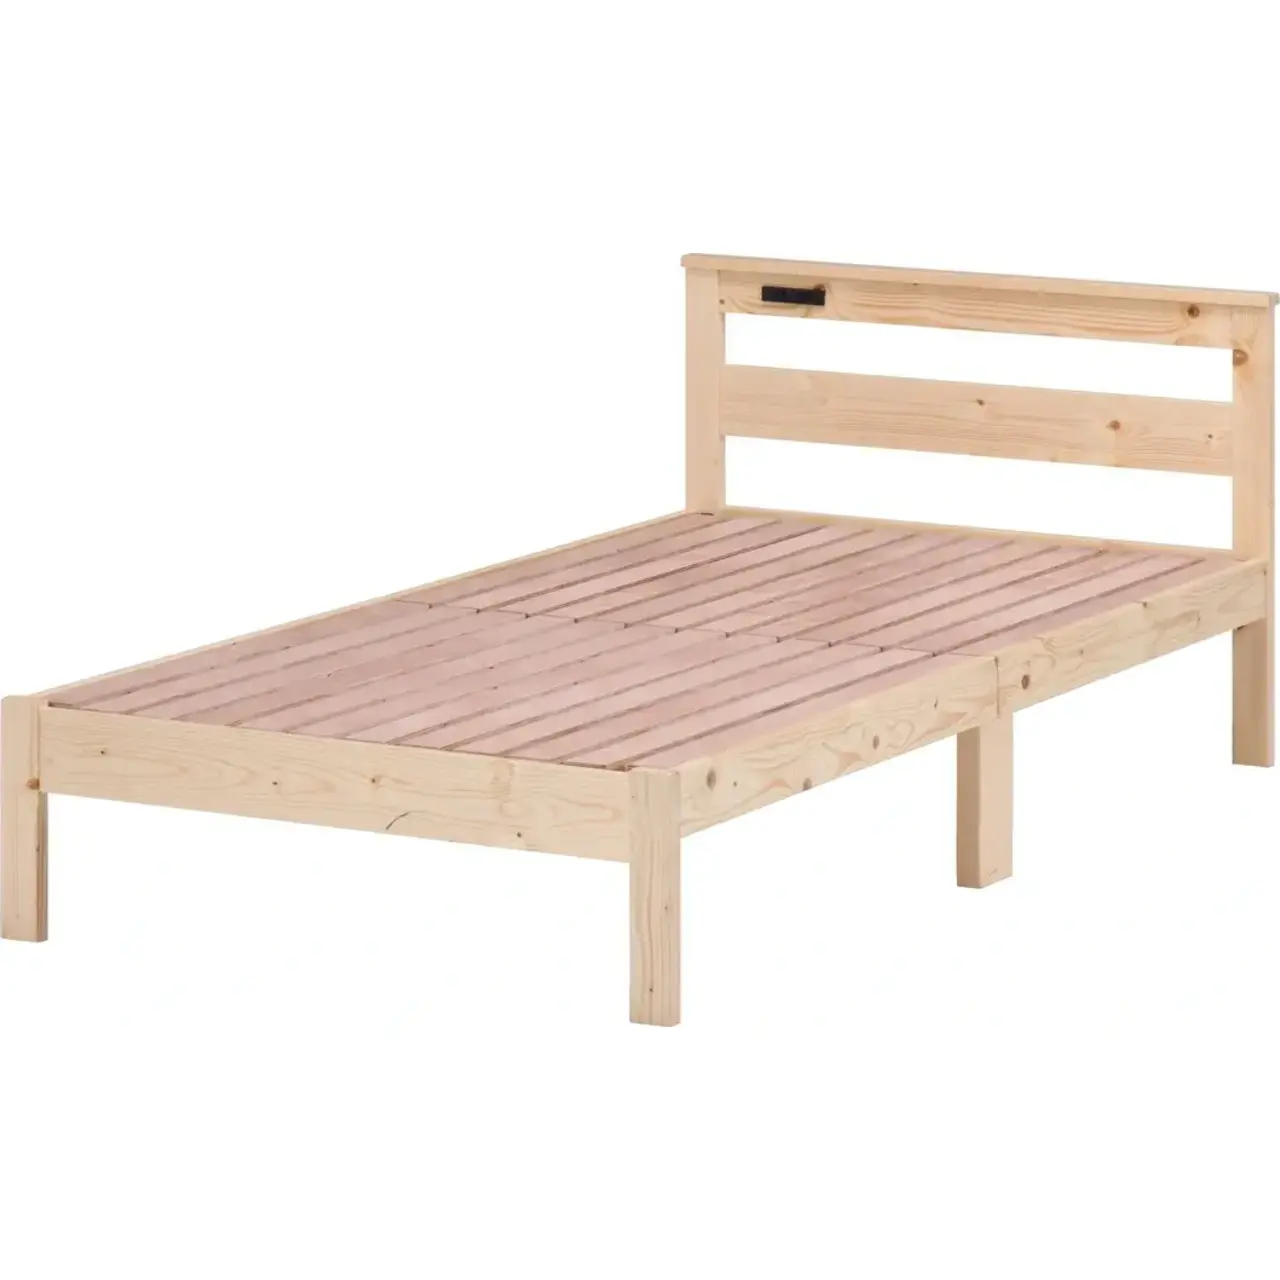 パイン材木製ベッド ブラザー | おしゃれな家具・インテリア通販 CORDi 